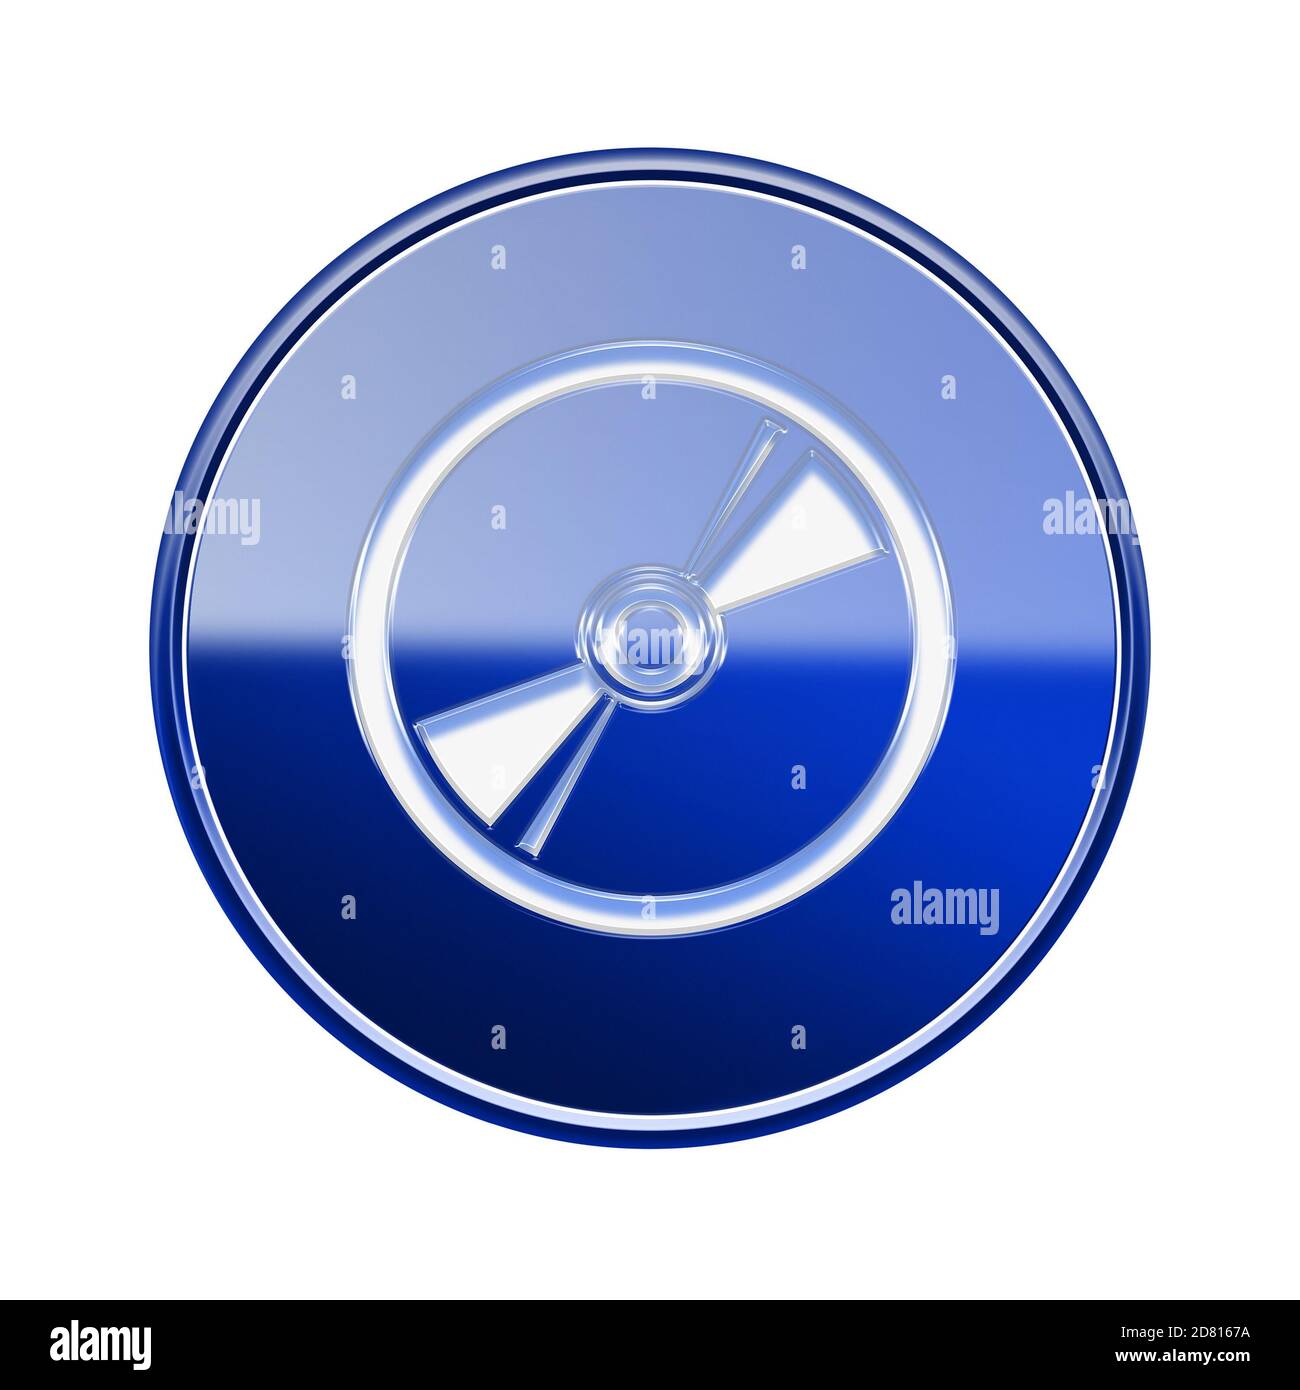 L'icône de disque compact bleu brillant, isolé sur fond blanc Banque D'Images